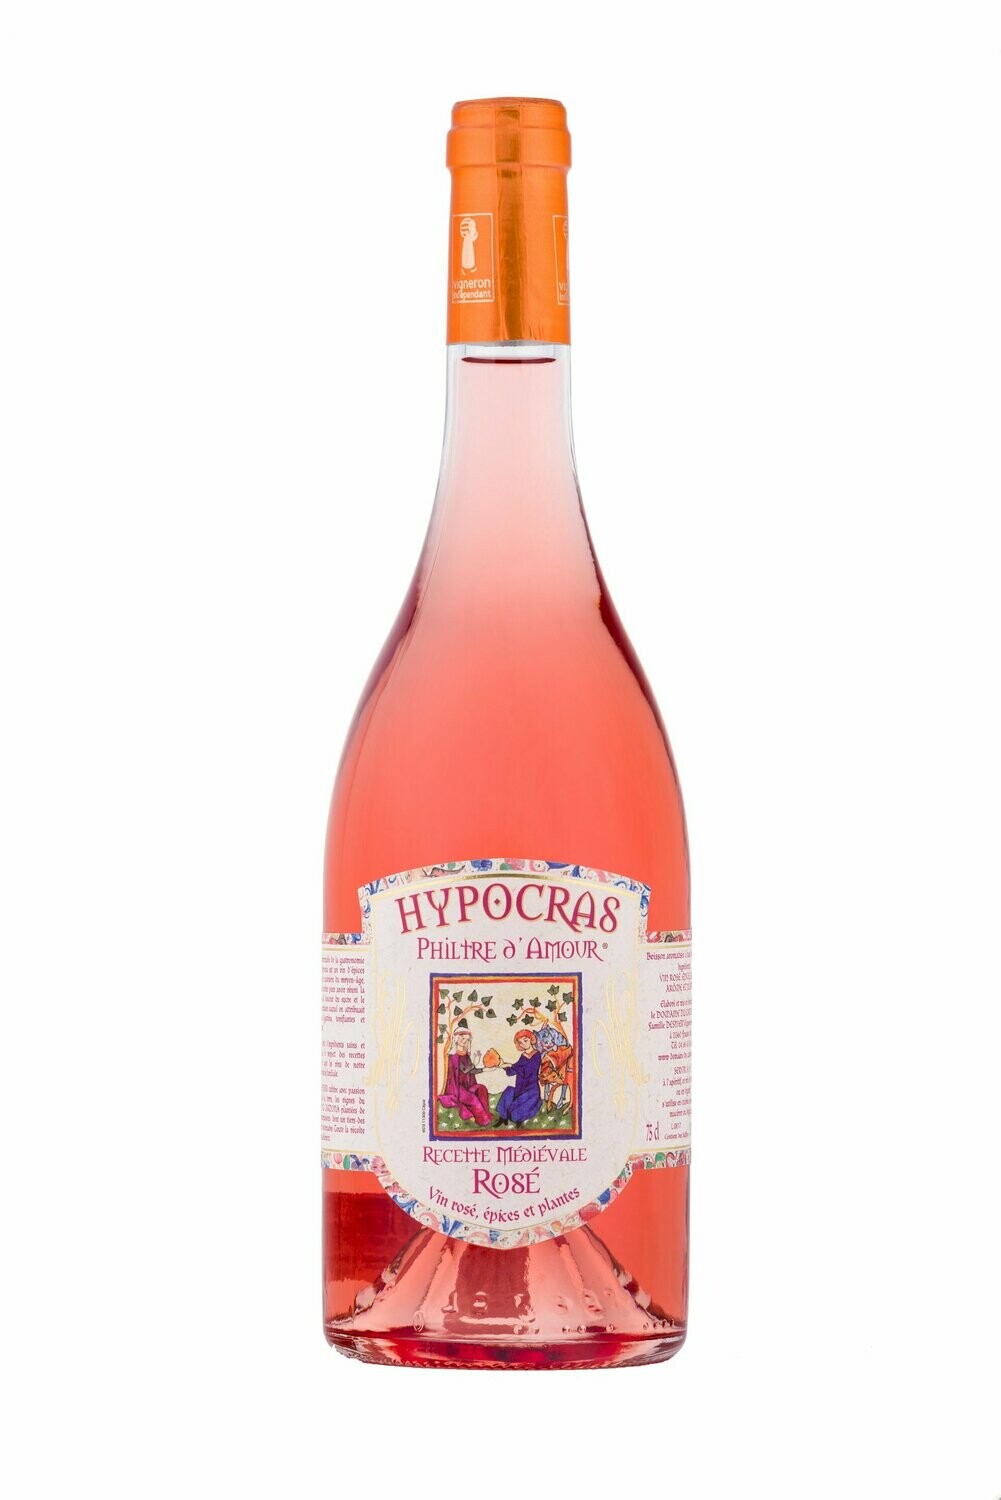 Hypocras "Philtre d'amour" rosé 75 cl